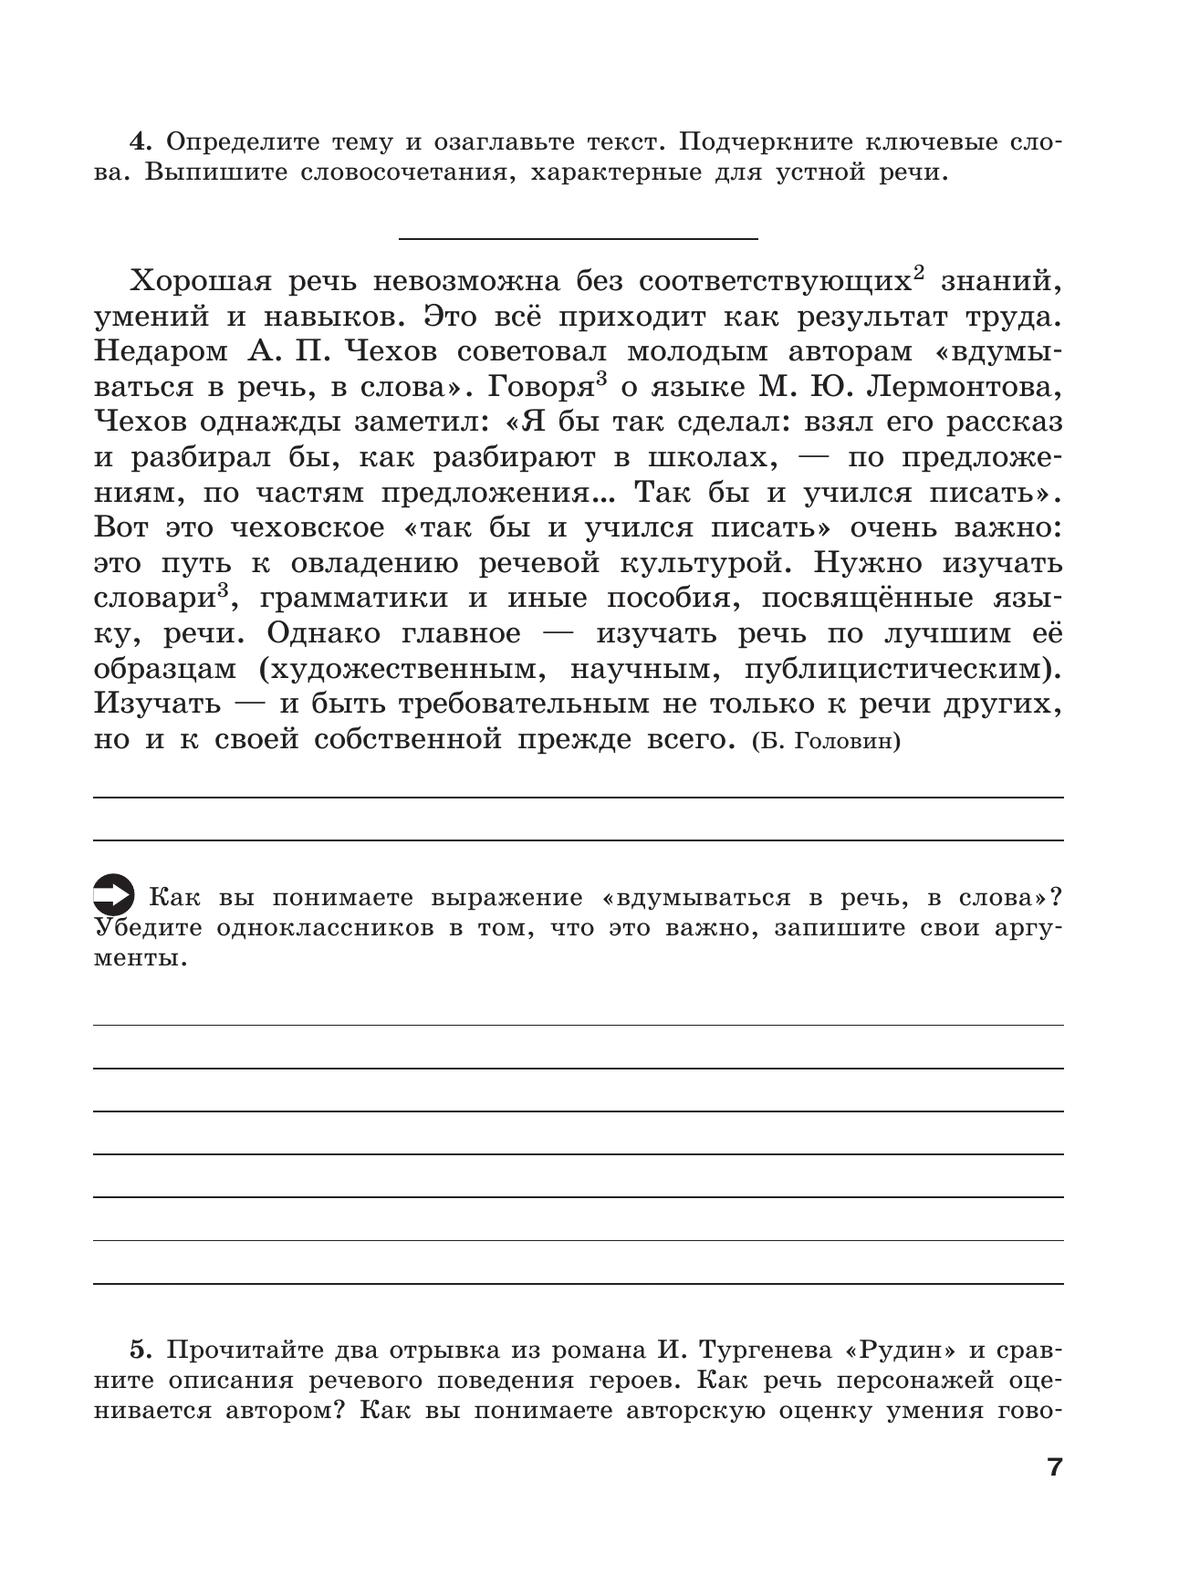 Скорая помощь по русскому языку. Рабочая тетрадь. 9 класс. В 2 ч. Часть 1 6